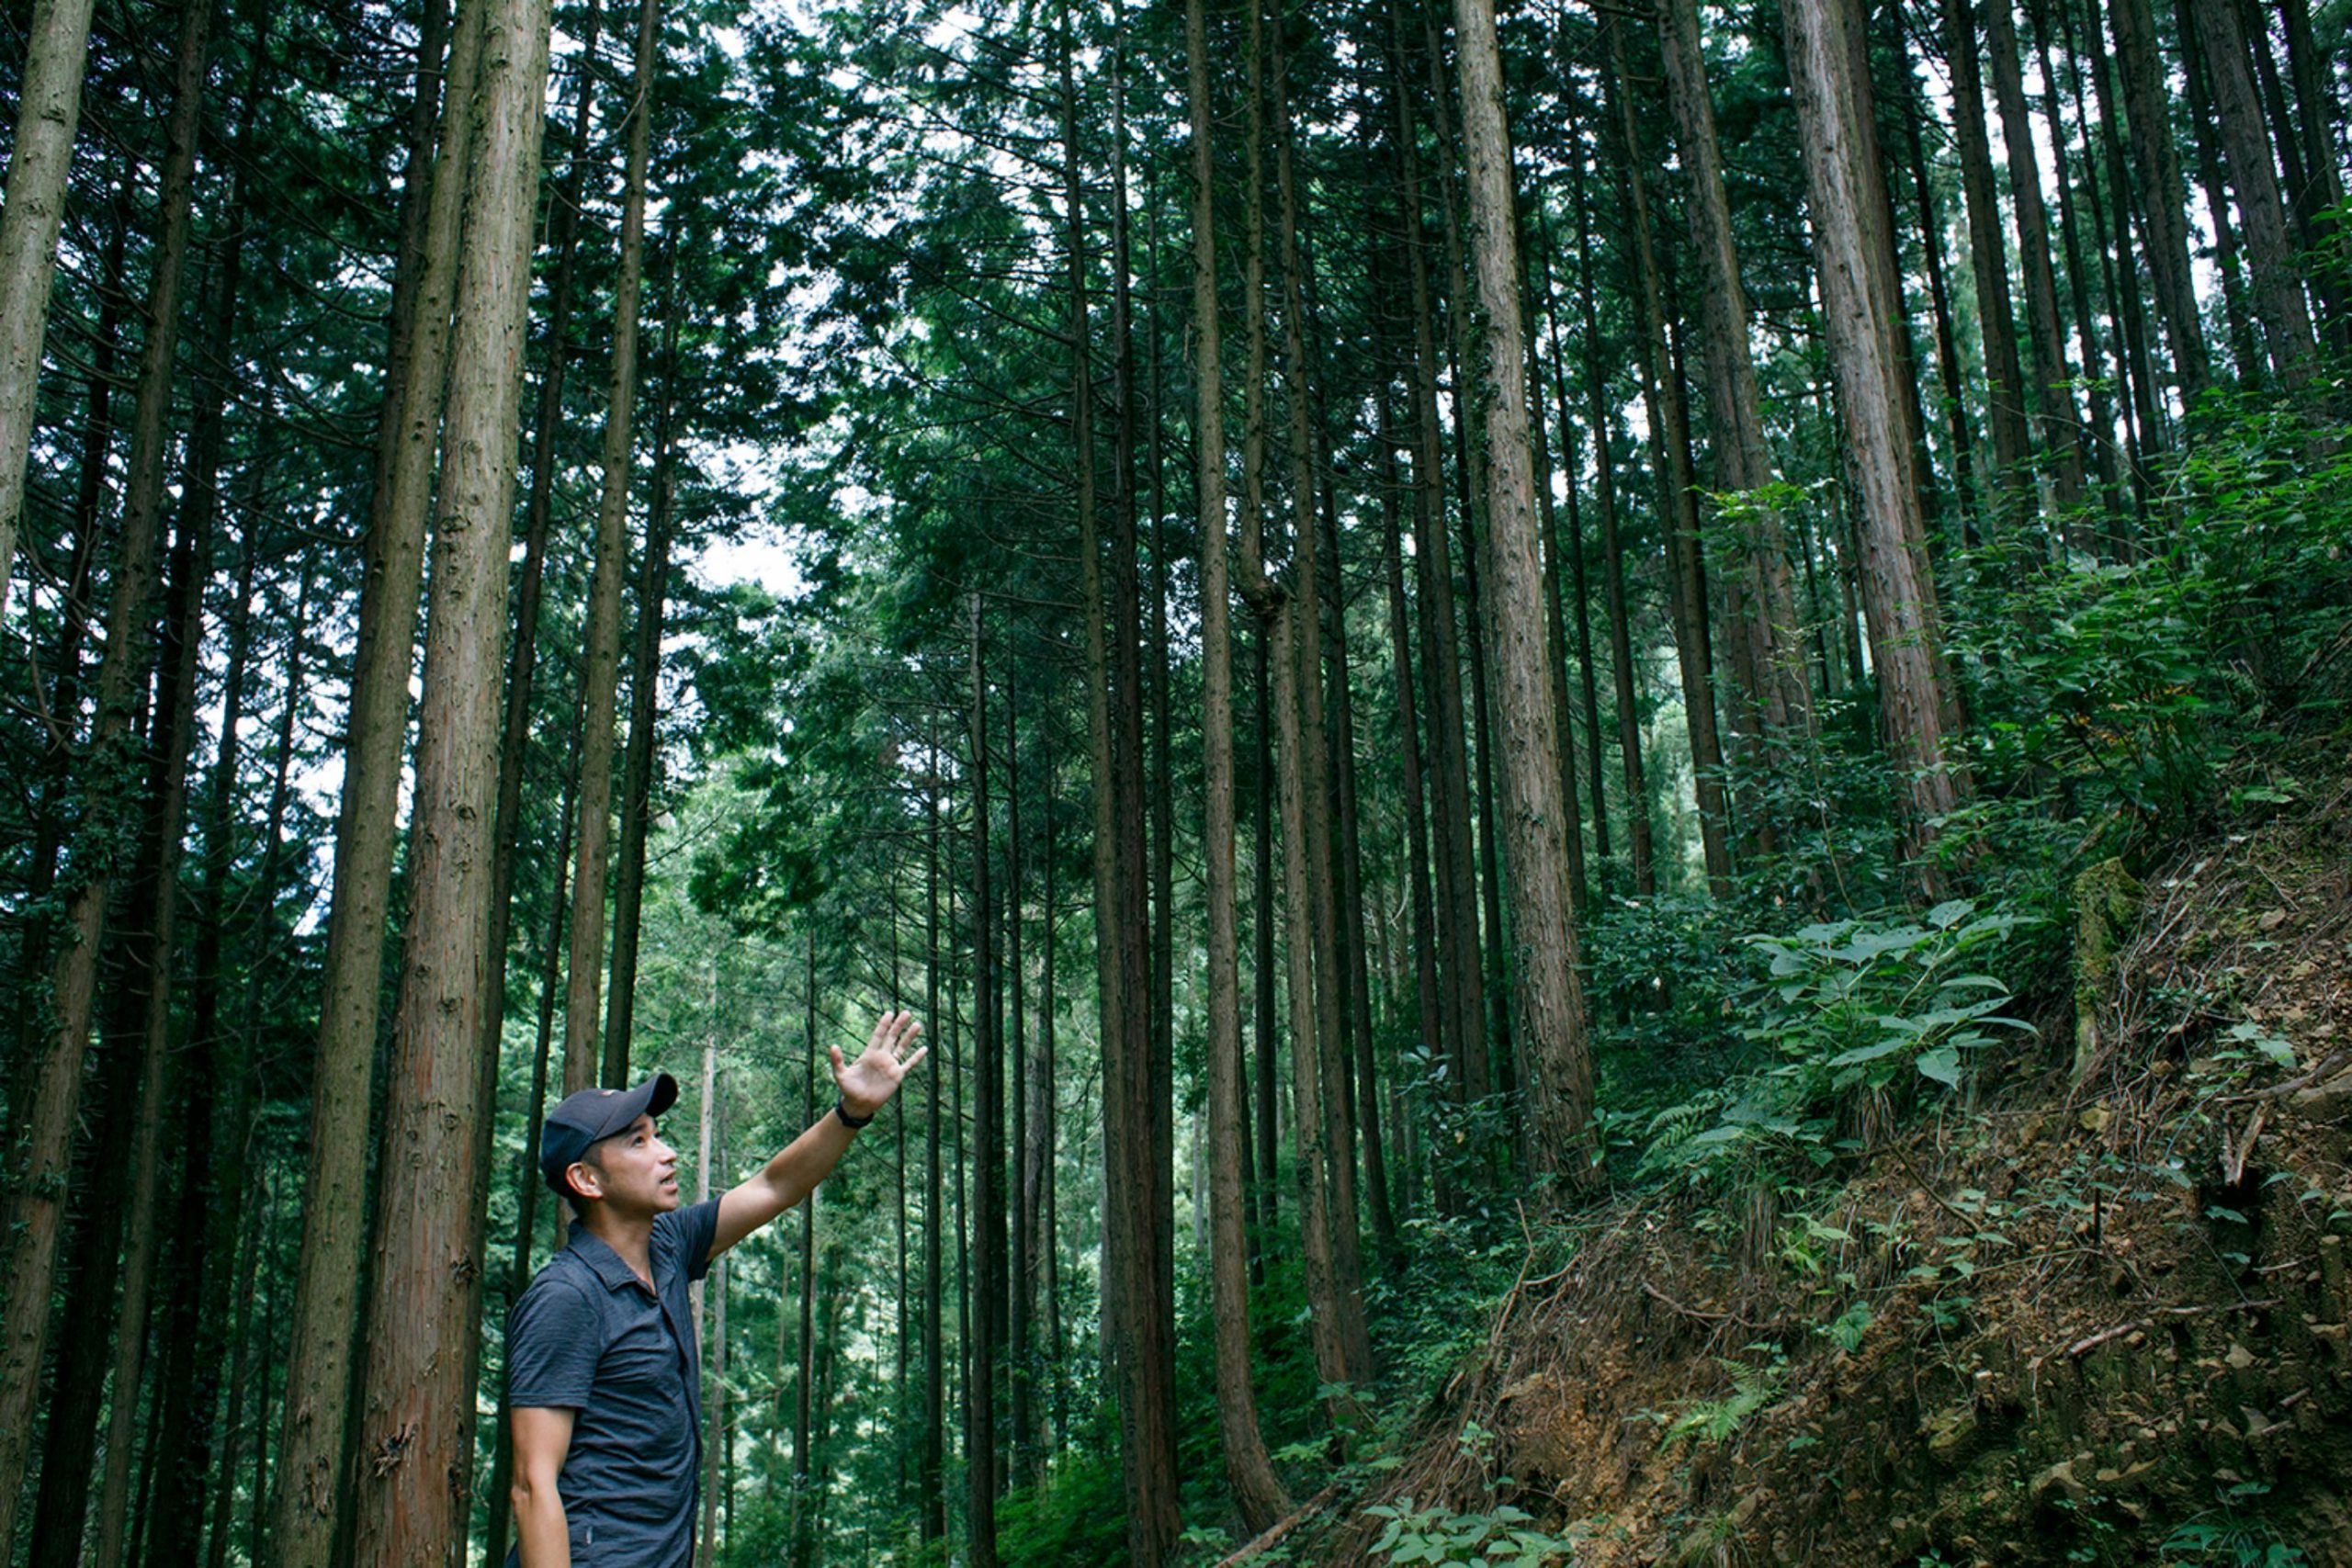 日本の林業は明るい 30年後の結果のために今日の仕事をする 東京チェンソーズ が感じる希望とは キノマチウェブ